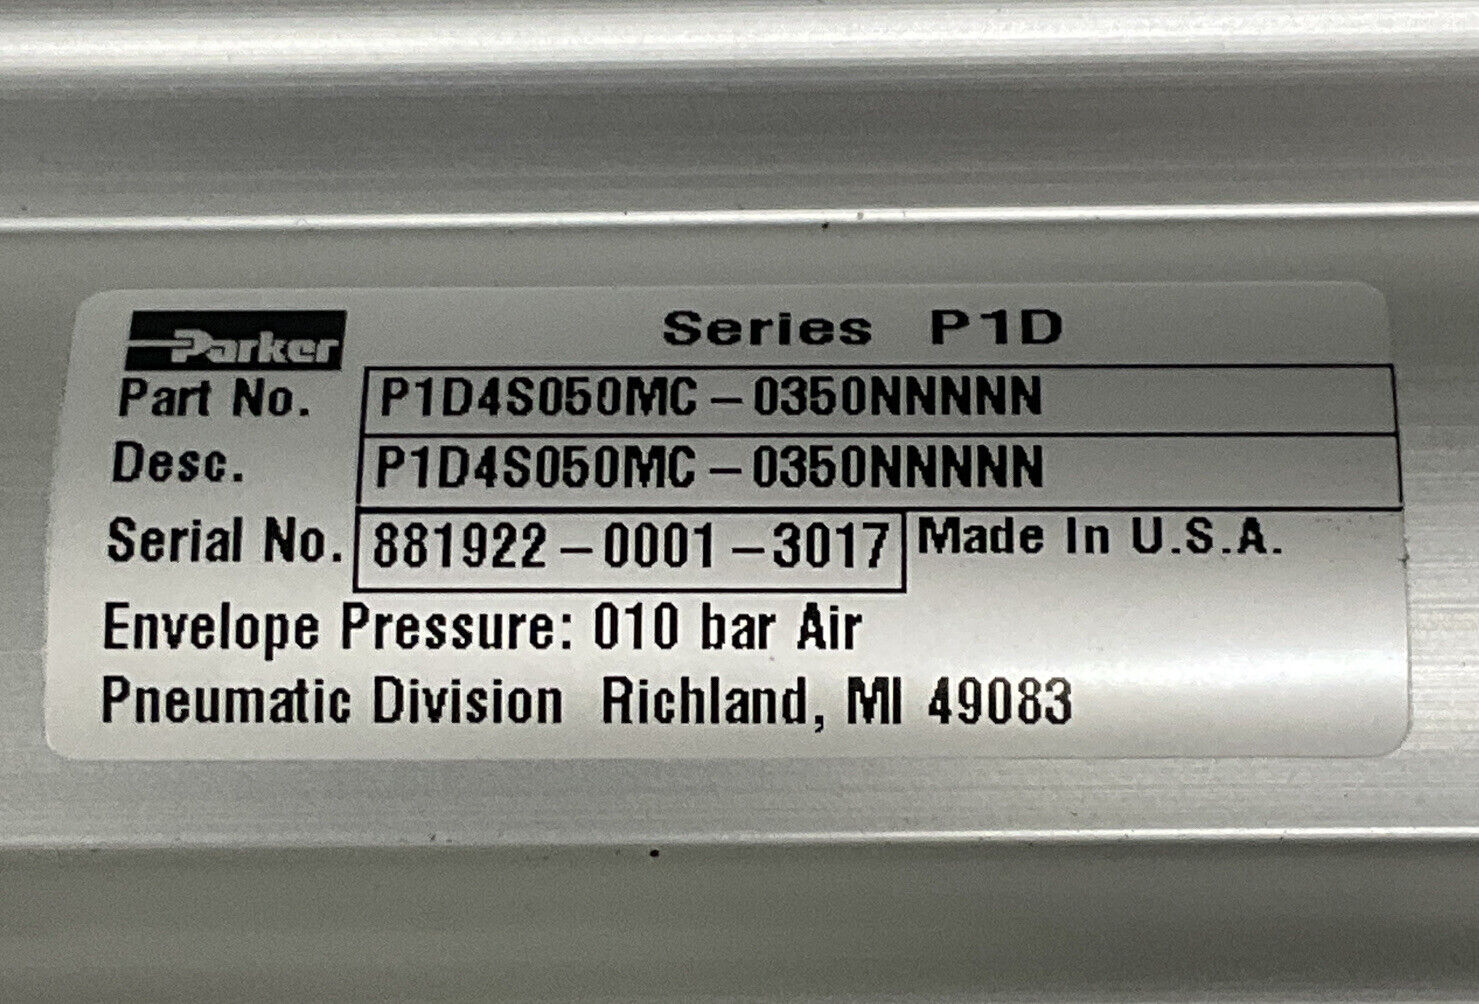 Parker P1D4S050MC-0350NNNNN Pneumatic Cylinder 20mm X 320mm Stroke (OV118) - 0